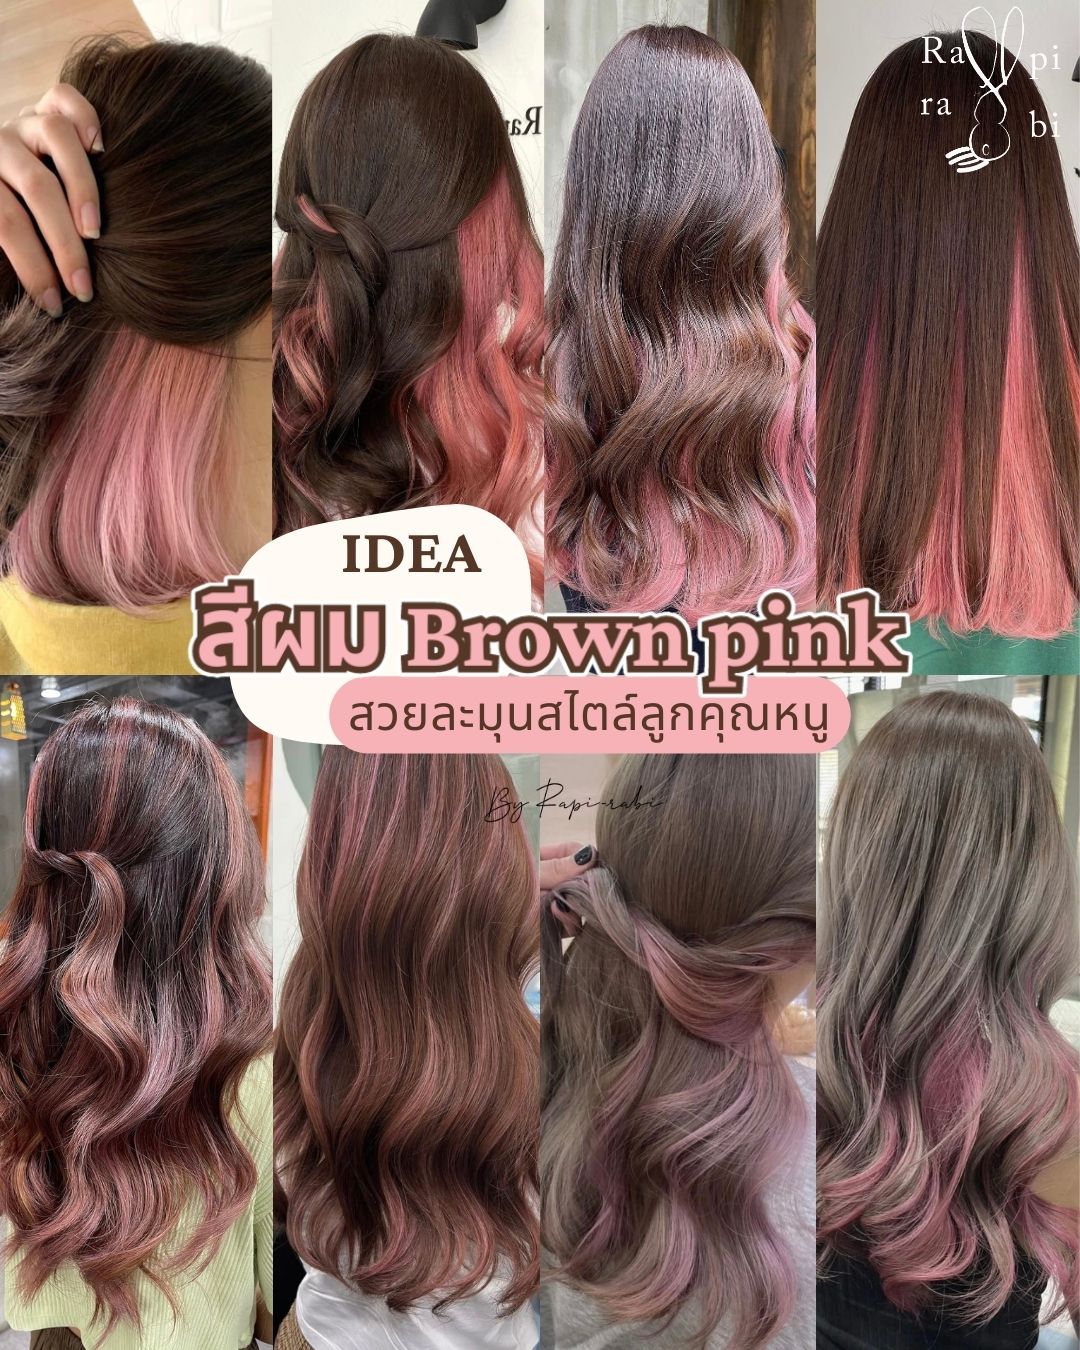 (TH) IDEA : สีผม Brown pink สวยละมุนสไตล์ลูกคุณหนู💘 By Rapi-rabi